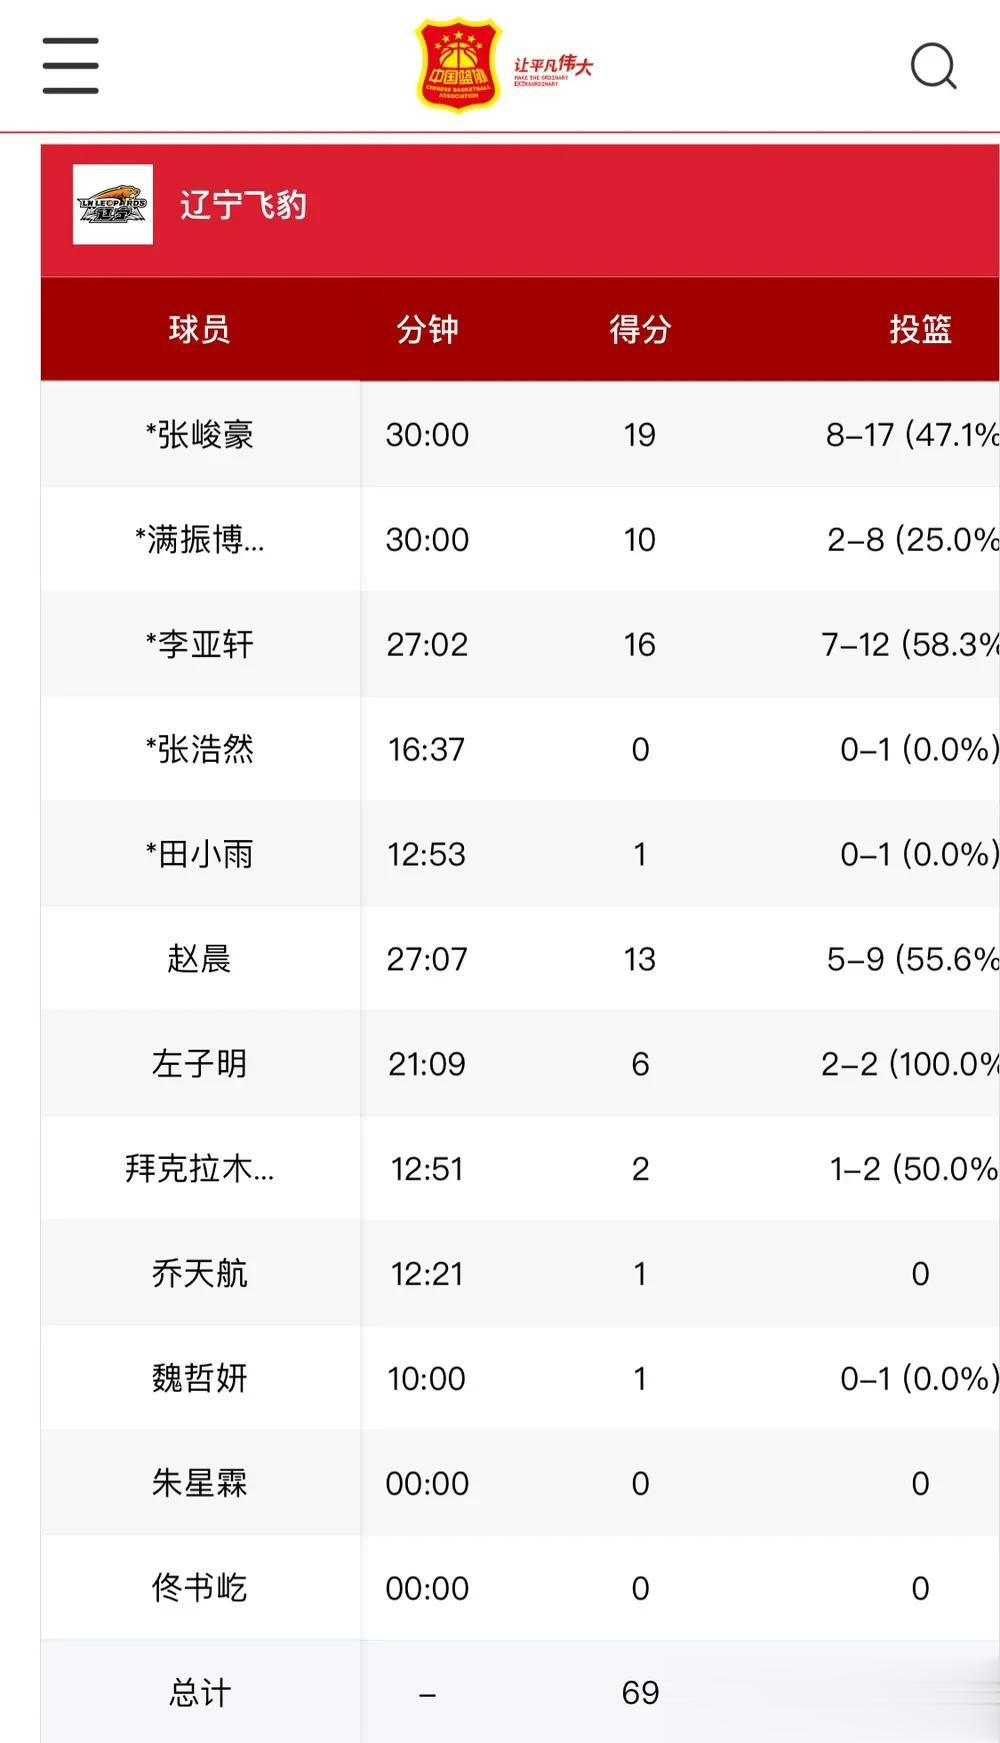 U19辽宁战胜广厦比赛数据：
张峻豪17投8中得到19分4篮板2助攻2抢断3失误(1)